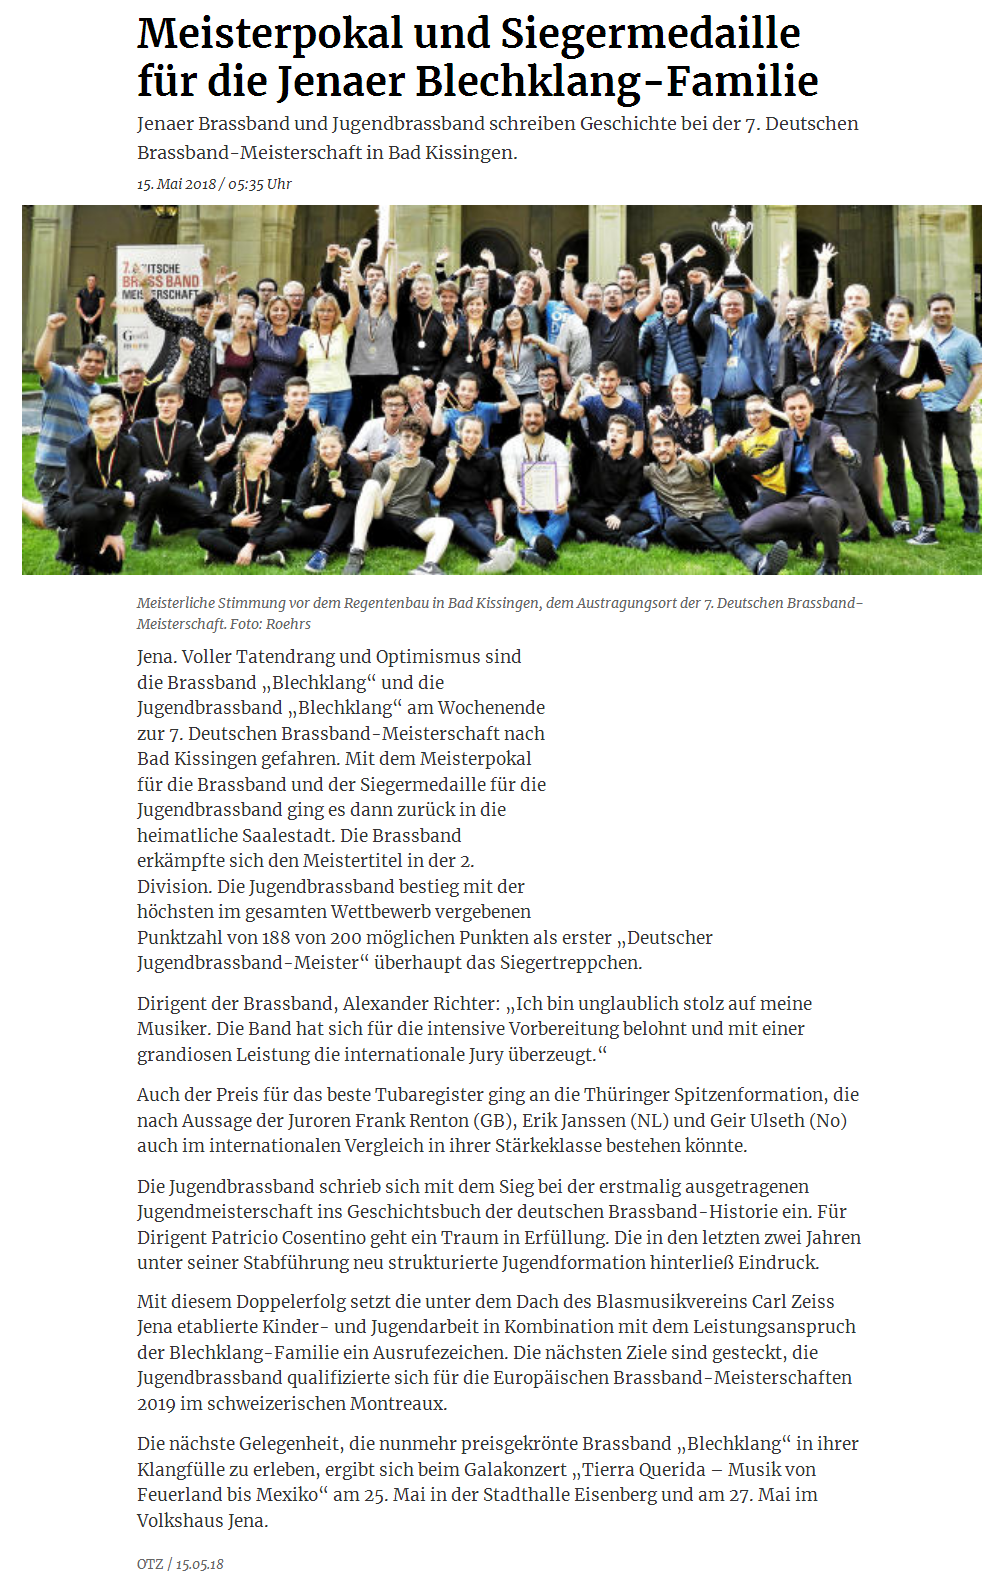 Online-Artikel der OTZ über die Erfolge der Brass Band BlechKLANG und der Jugend Brass Band BlechKLANG bei der Deutsche Brass Band Meisterschaft 2018